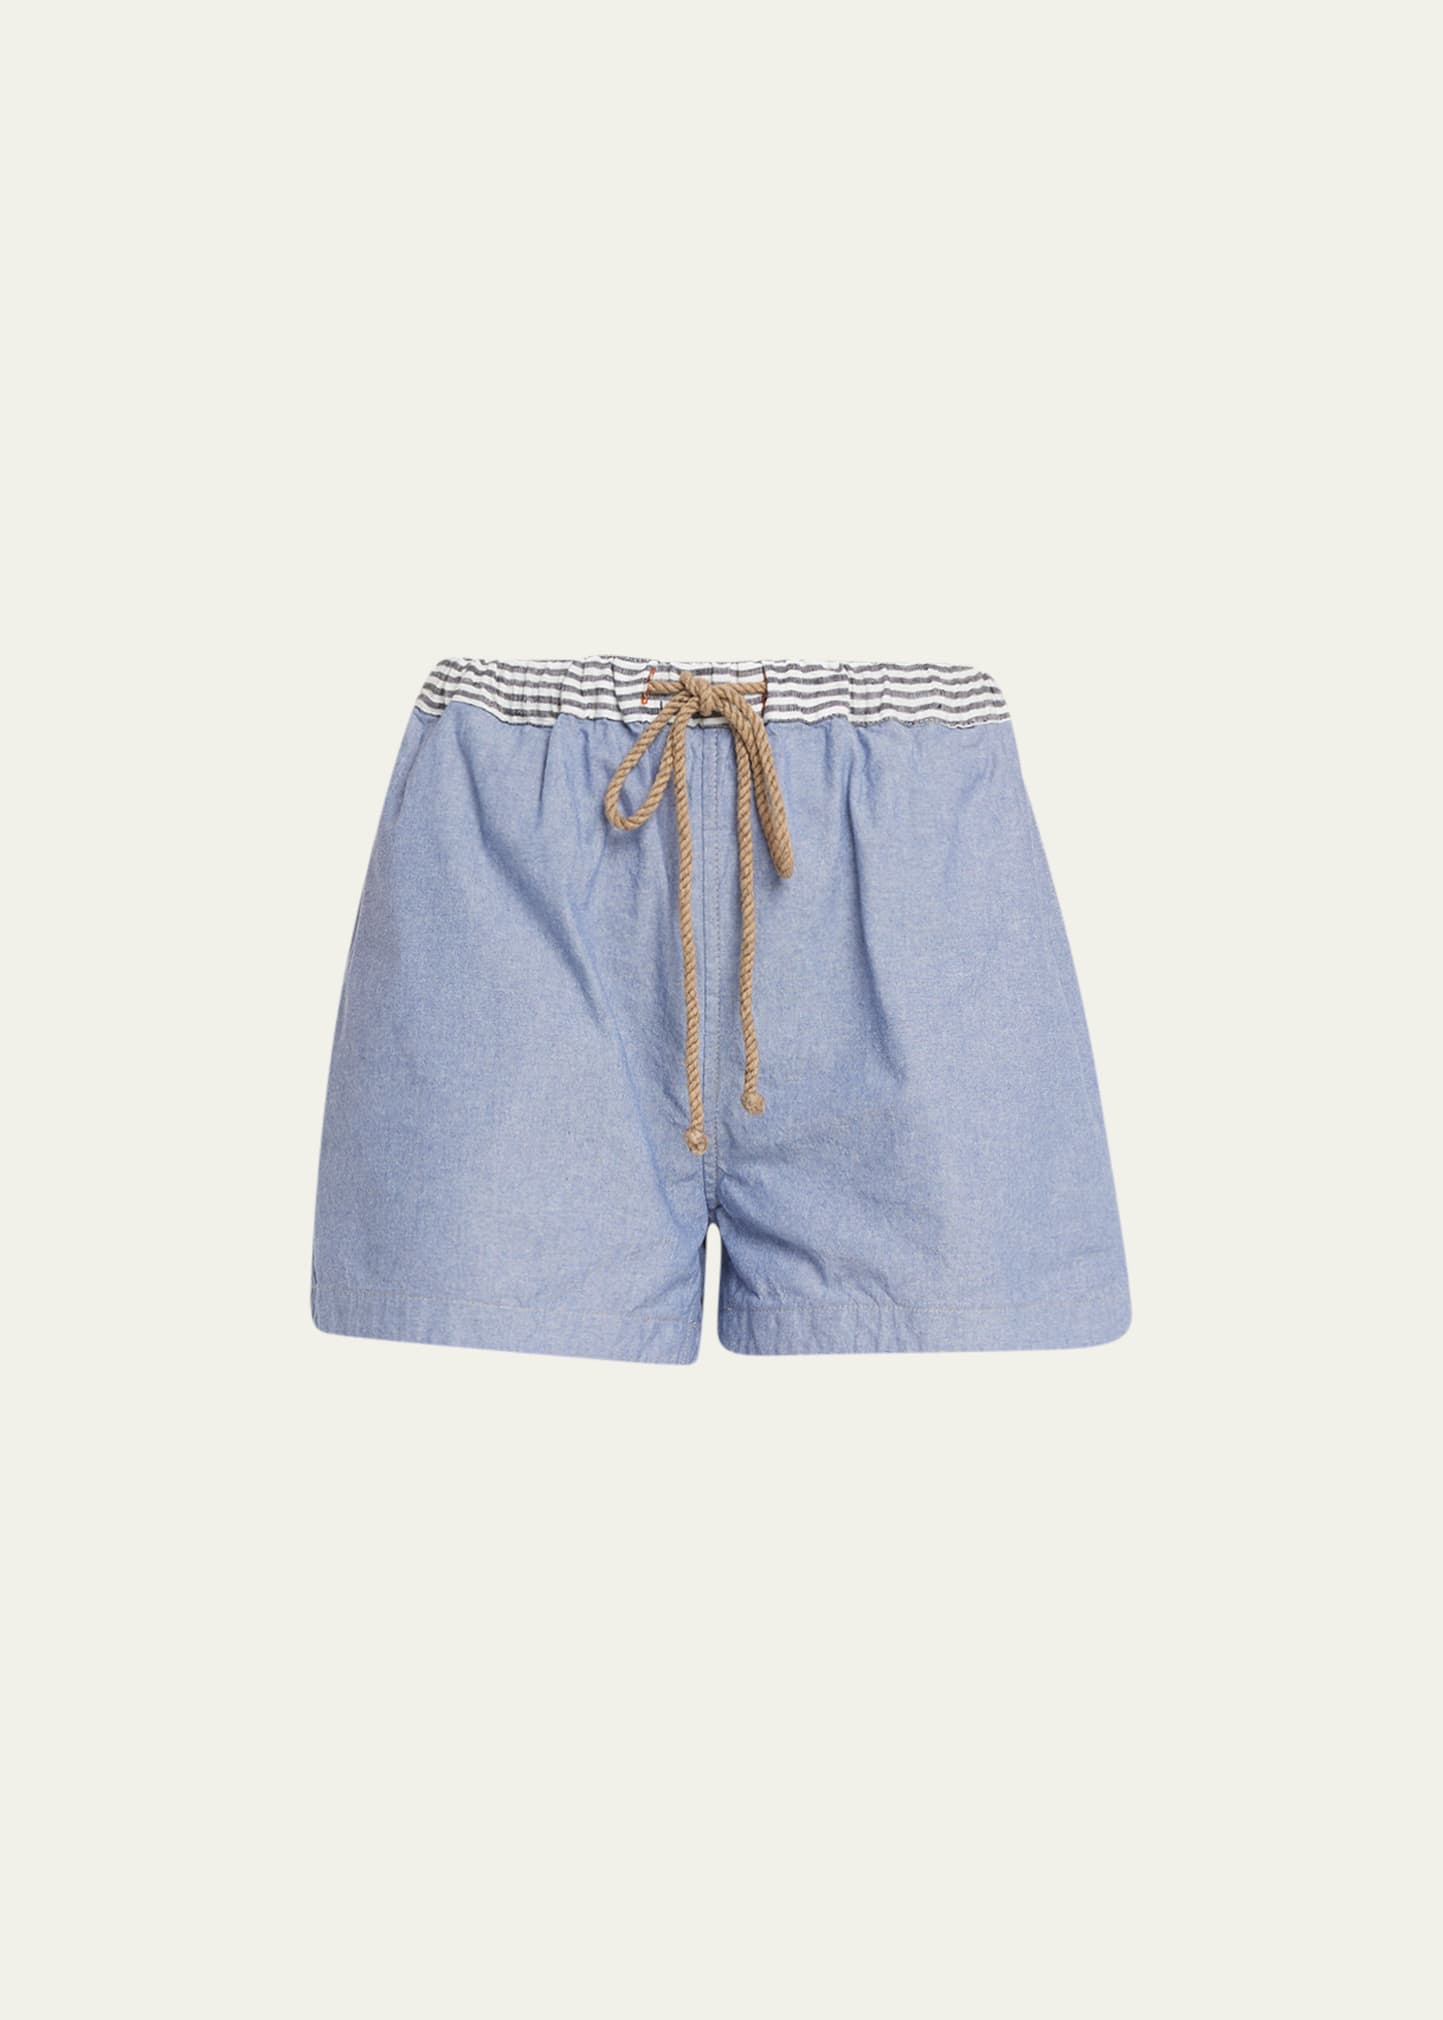 The Salting Washed Chambray Drawstring Short Shorts